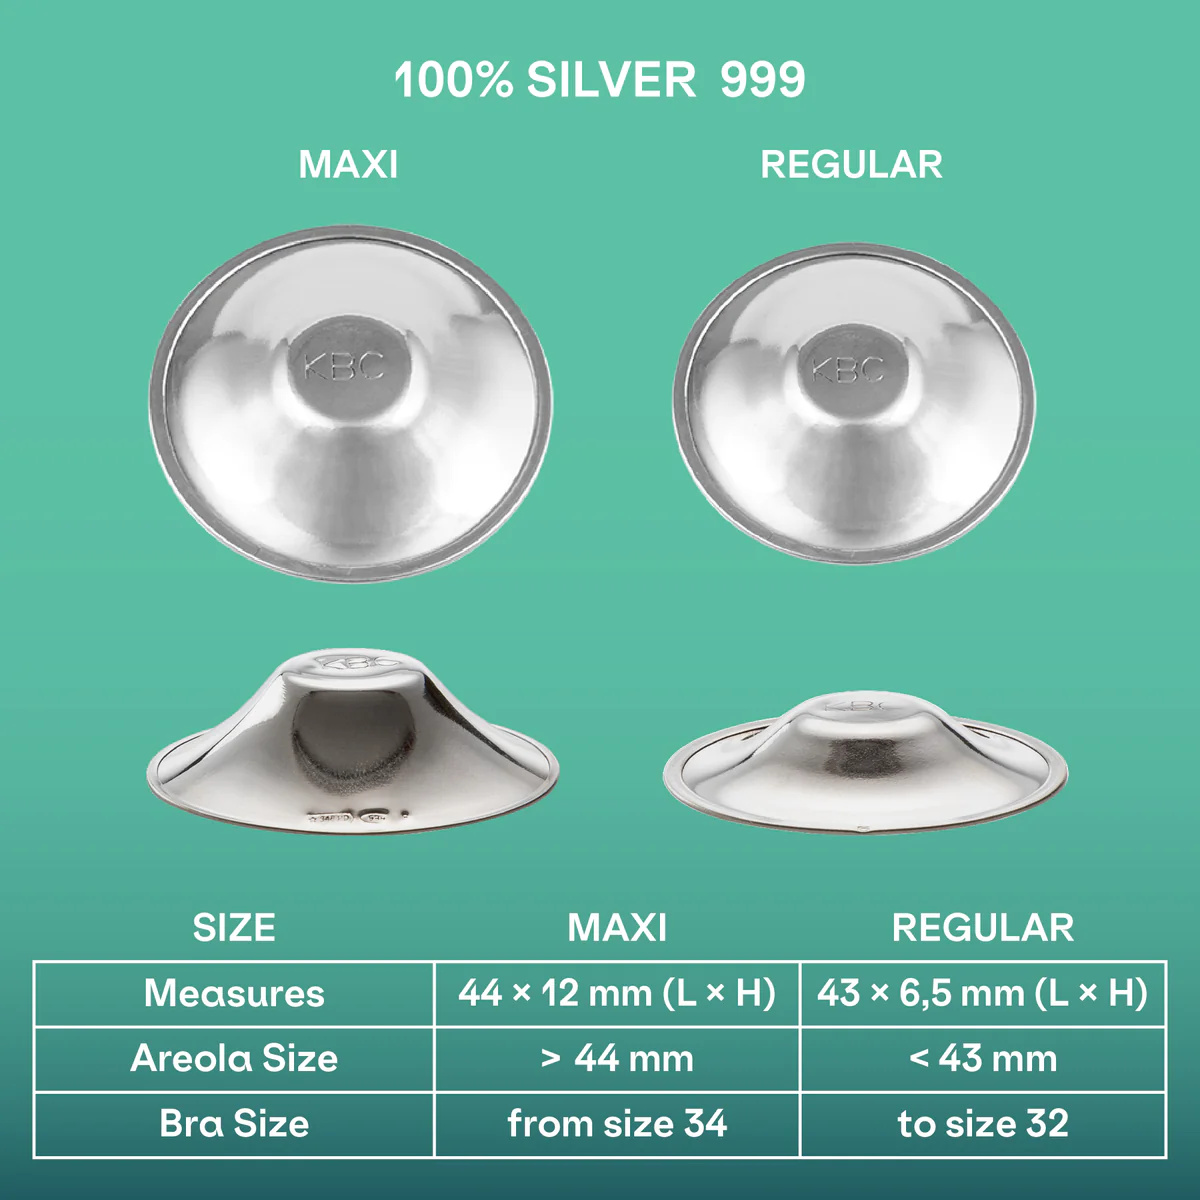 Koala štitnici za dojenje od čistog 999 srebra - Regular Maxi veličina